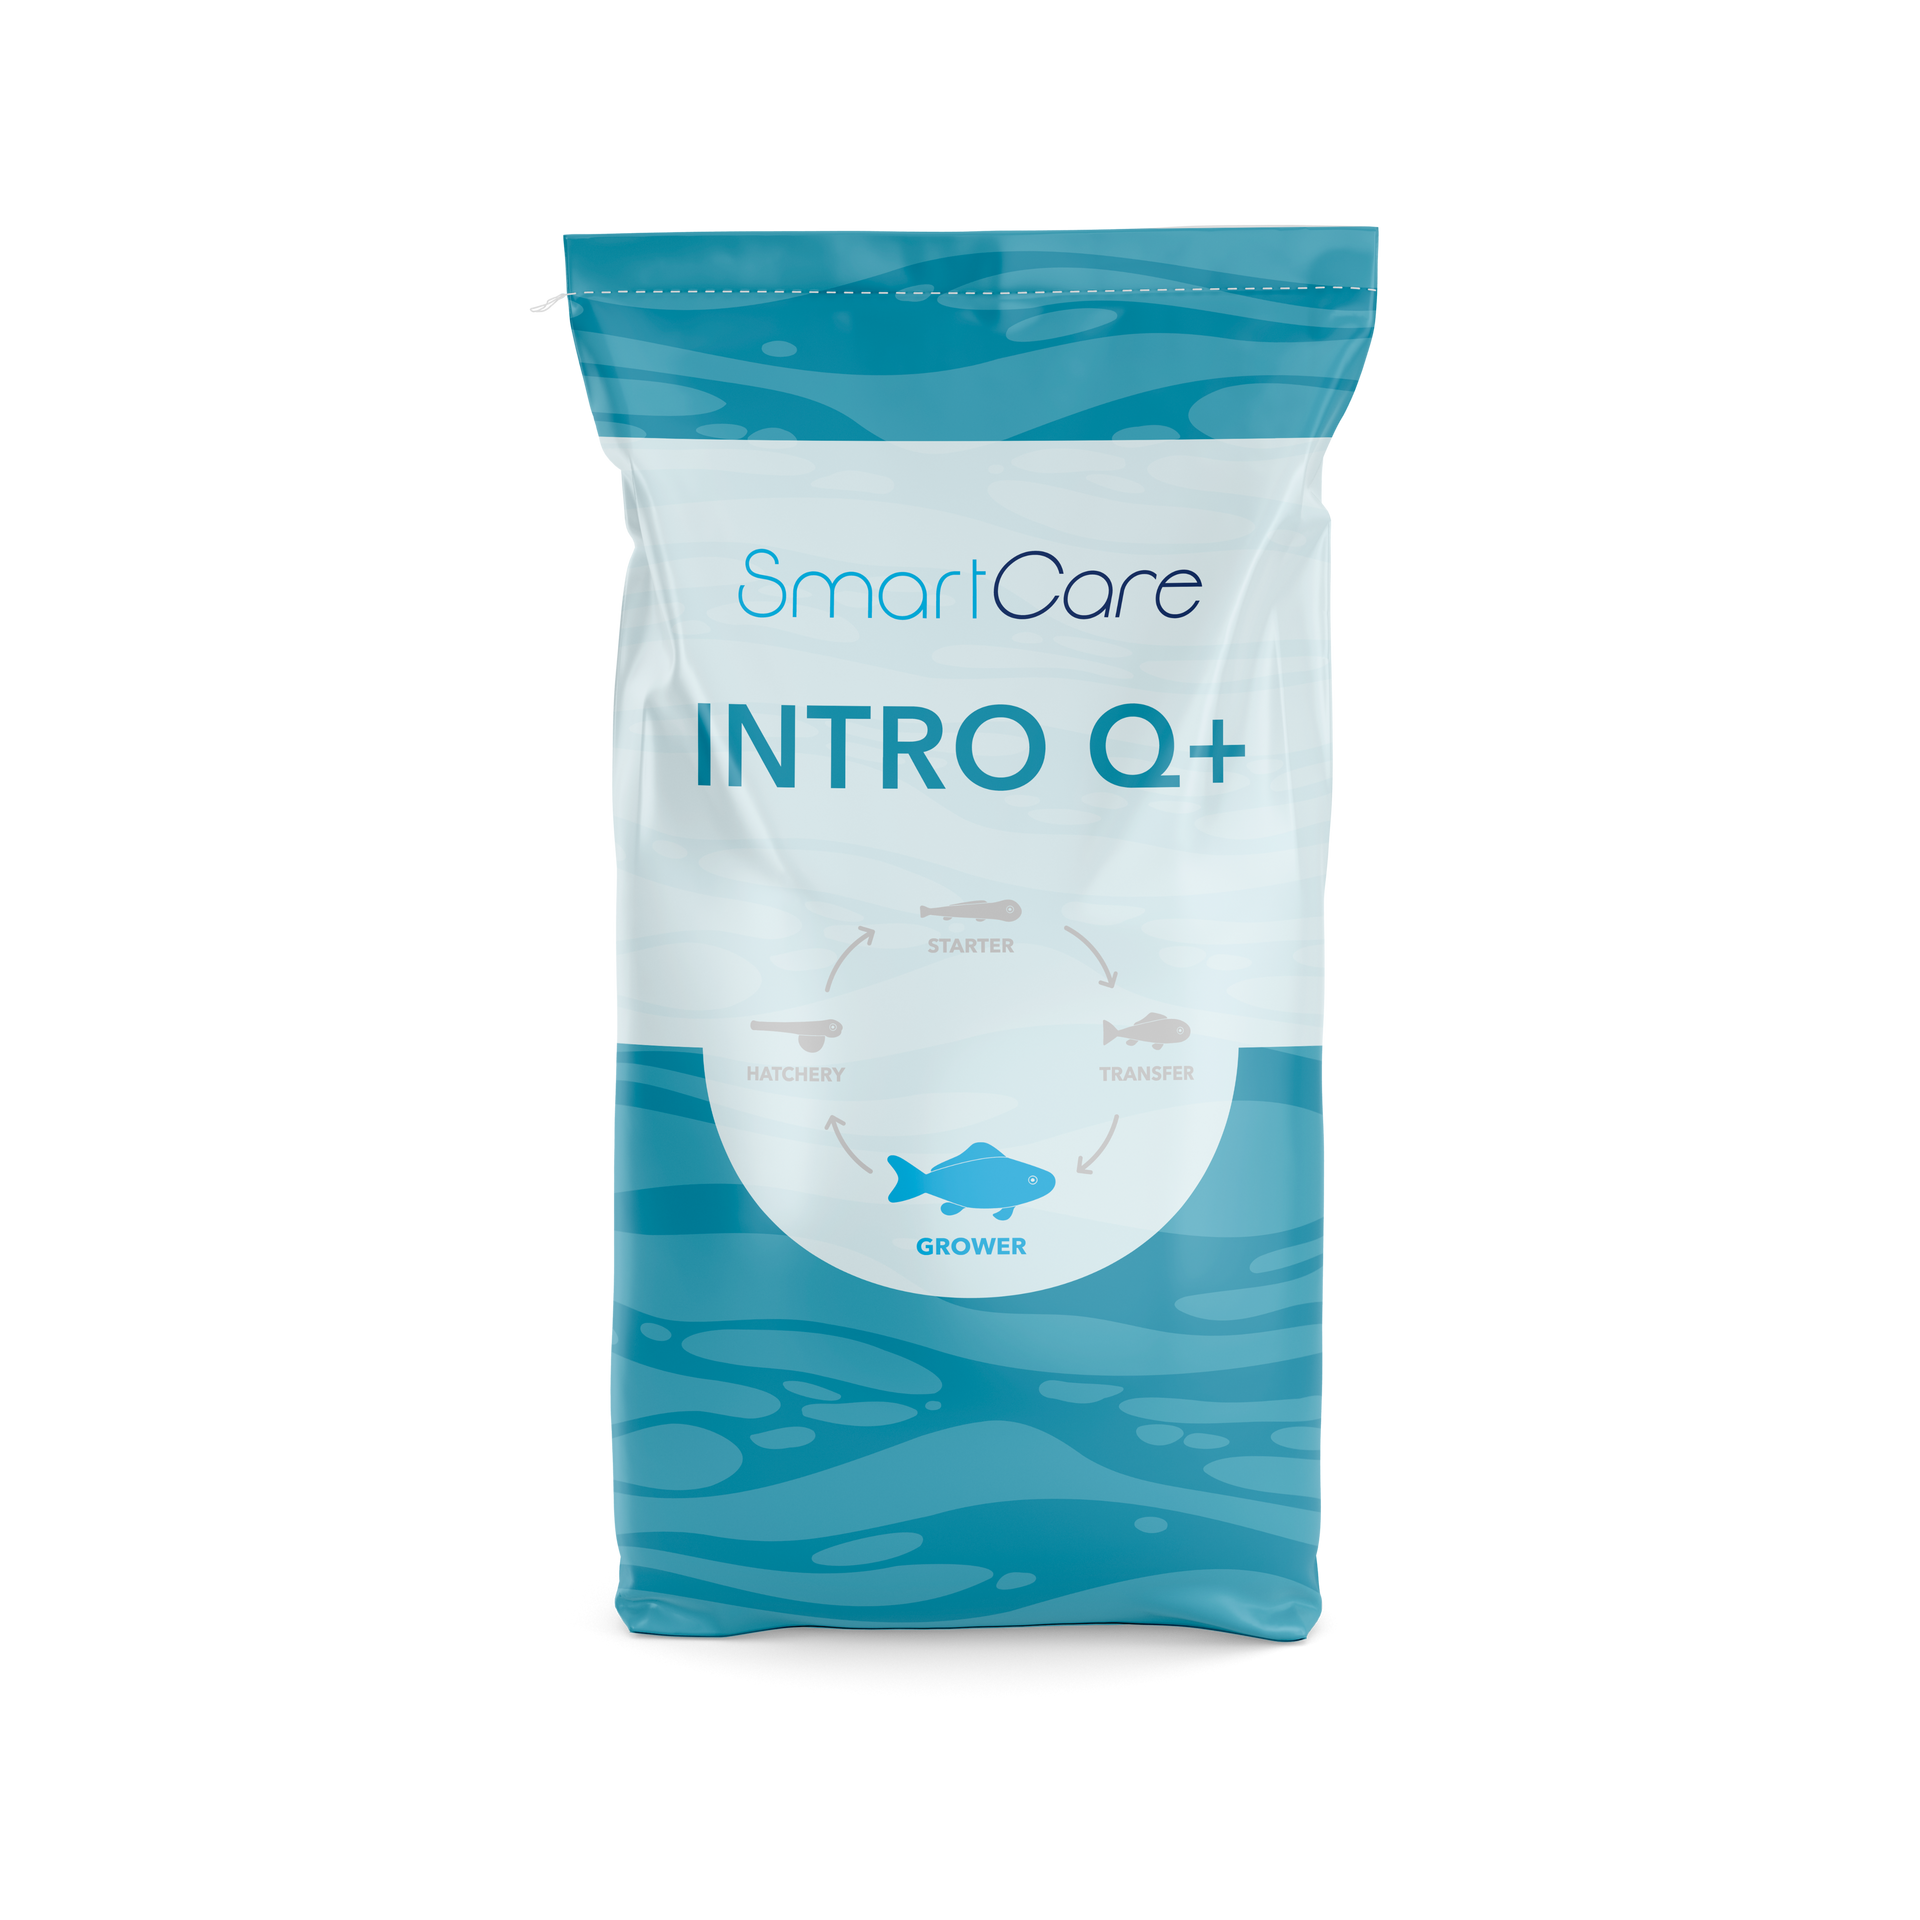 SmartCare INTRO Q+ feed for atlantic salmon